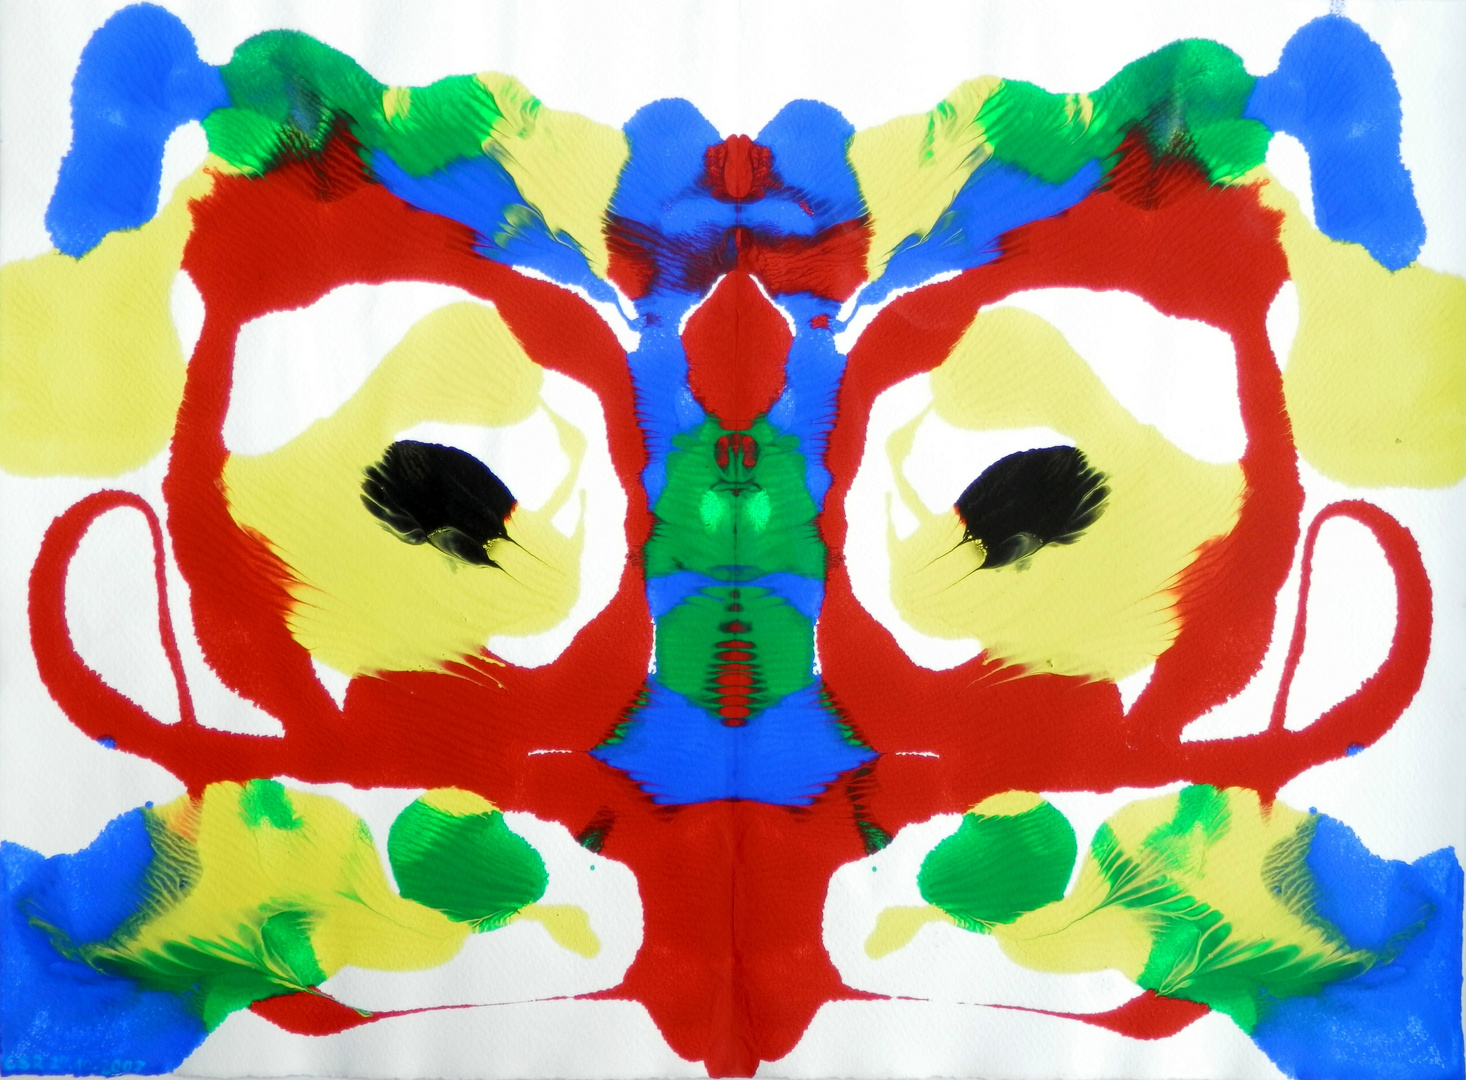 Rorschachbild: Ein "Gesicht" entsteht durch einfache Farbkleckse